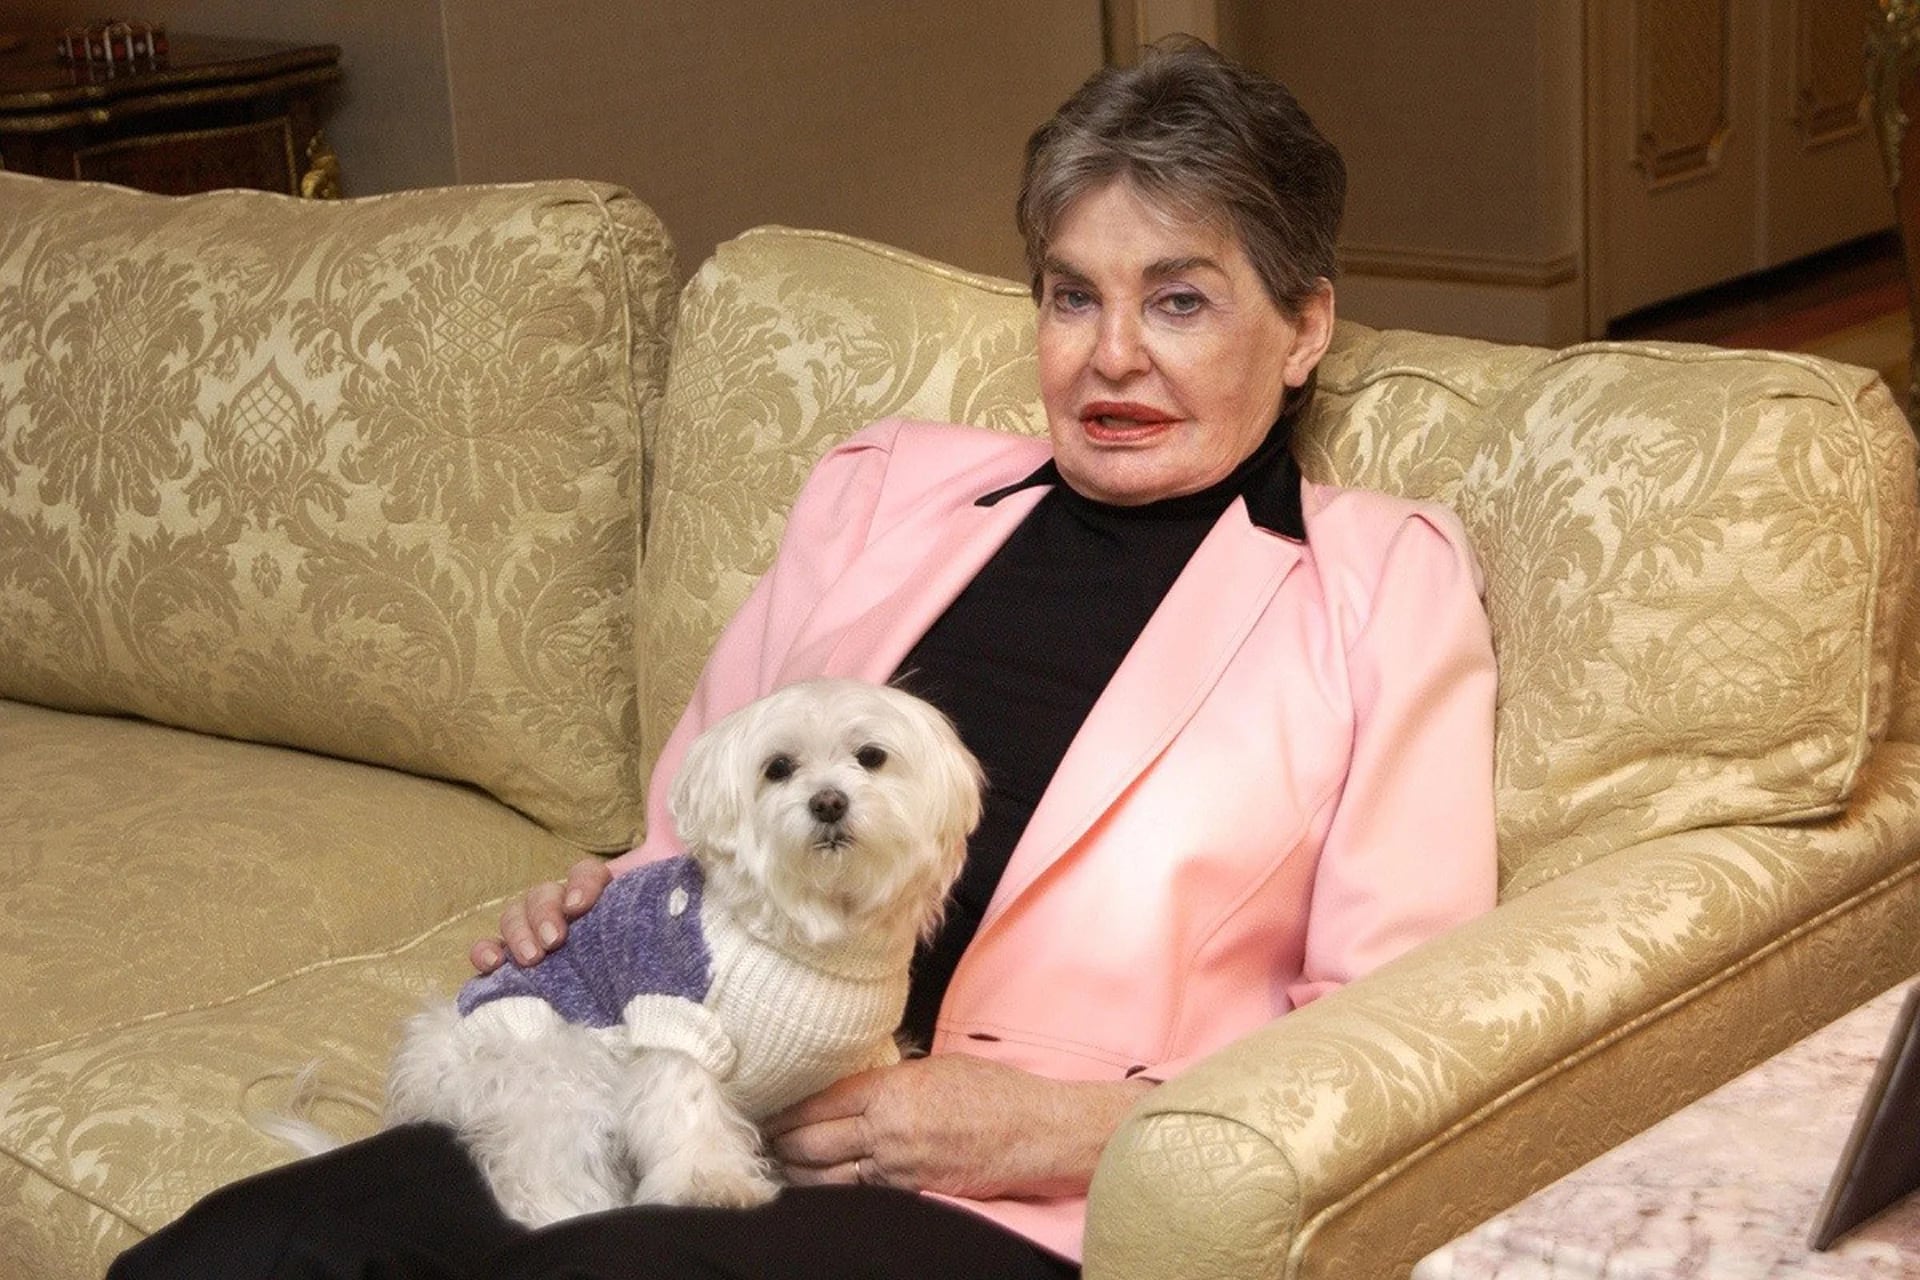 Su amada dueña Leona Helmsley, propietaria de una importante empresa de bienes raíces y hoteles, quien falleció en 2007, le dejó a su perro 12 millones de dólares